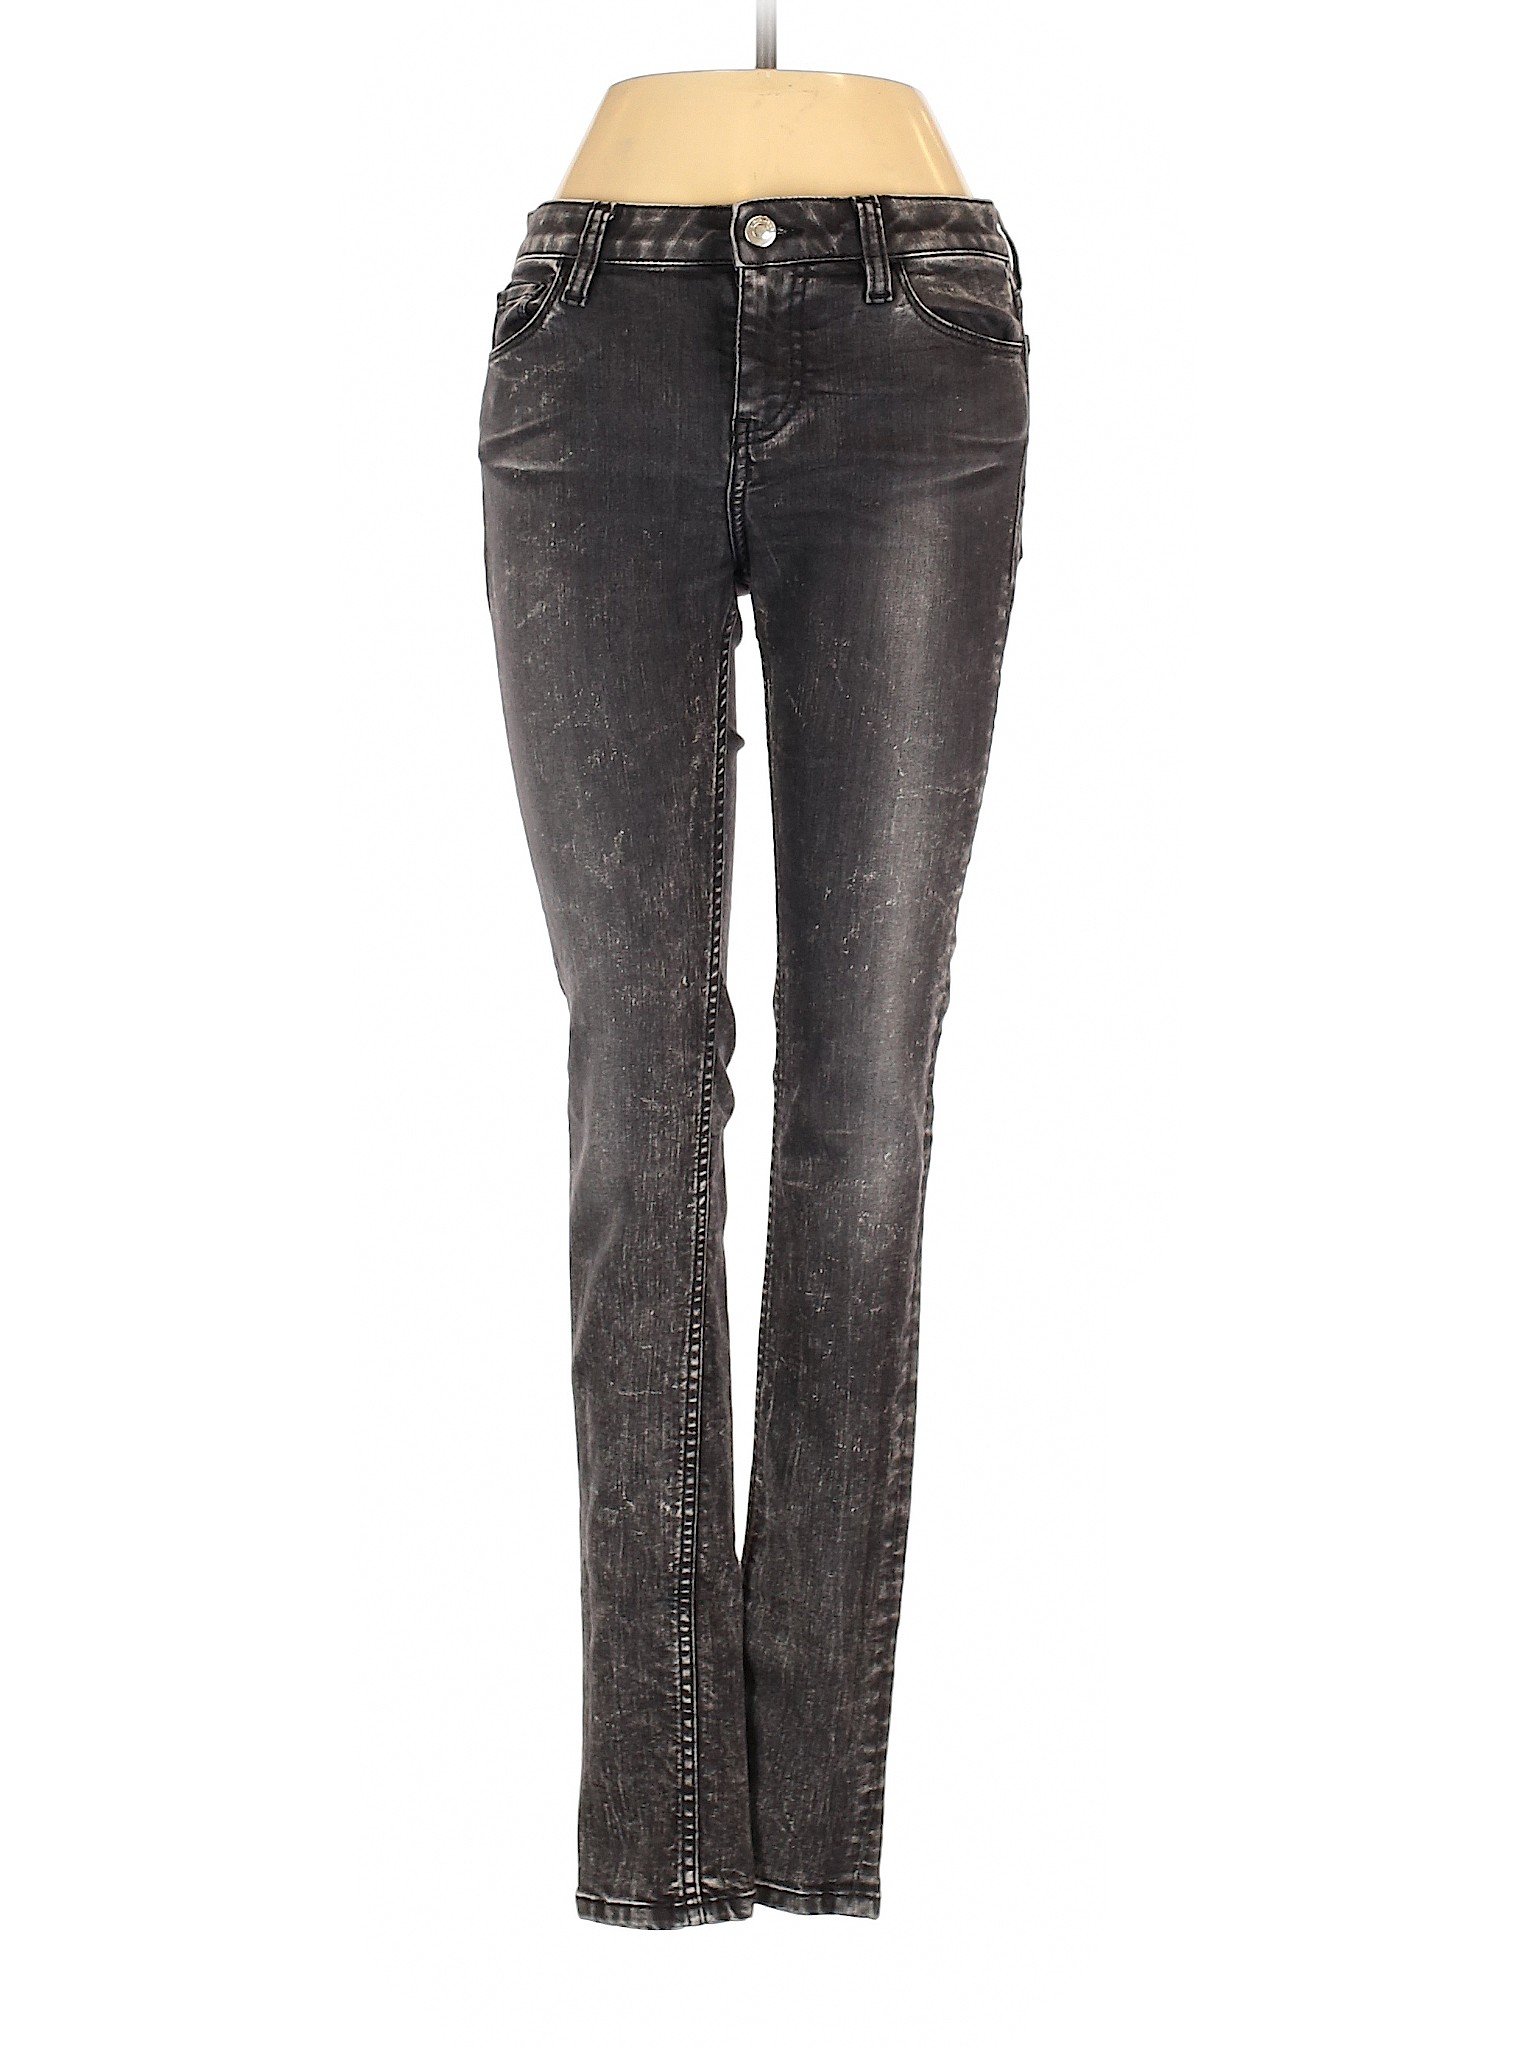 IRO Jeans Women Black Jeans 28W | eBay